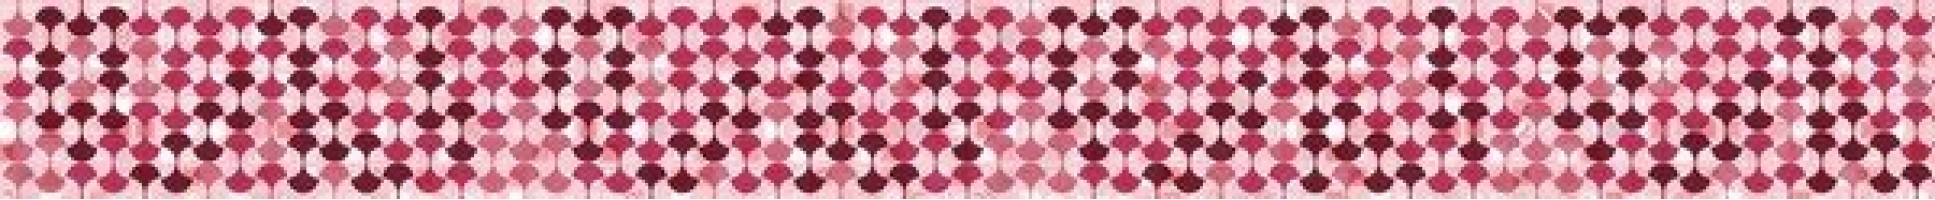 Бордюр Нефрит-Керамика Форте Оригами розовый 3x31 34-03-41-003